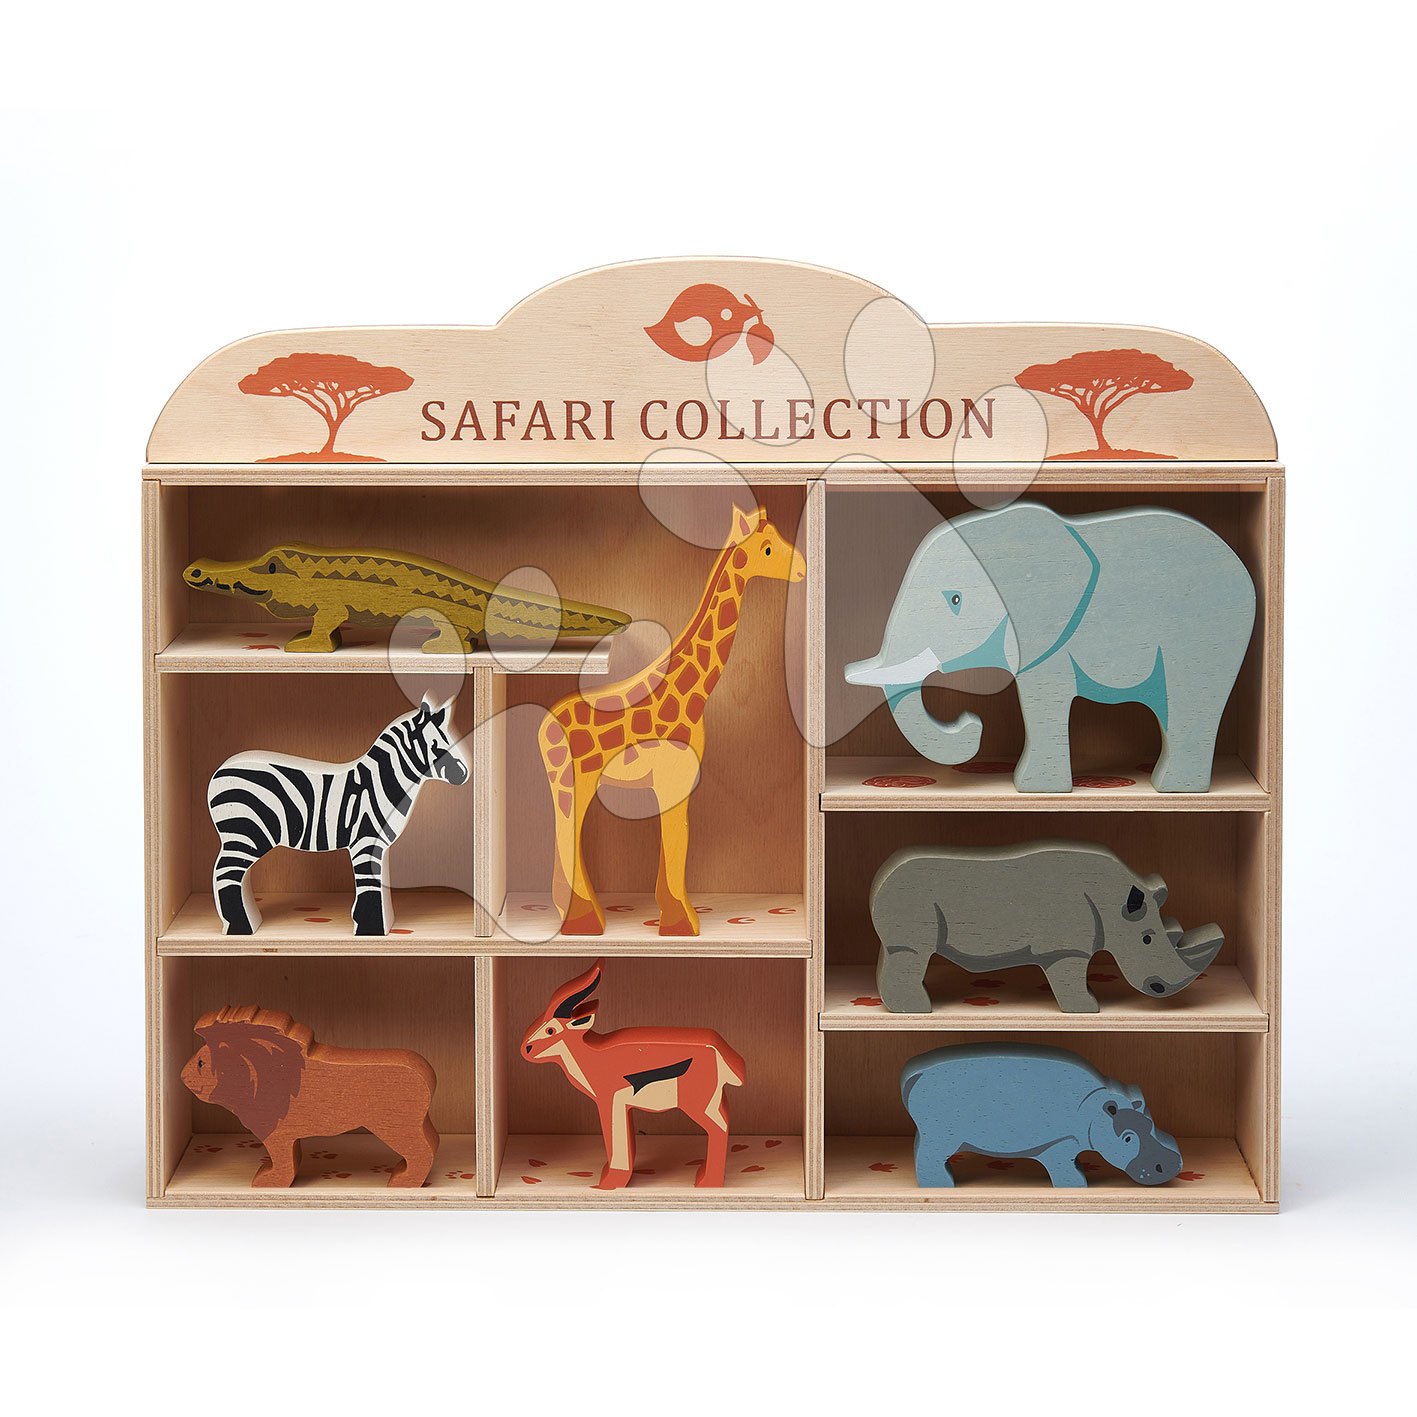 Drevené divoké zvieratká na poličke 8 ks Safari set Tender Leaf Toys krokodíl, slon, zebra, antilopa, žirafa, nosorožec, hroch, lev